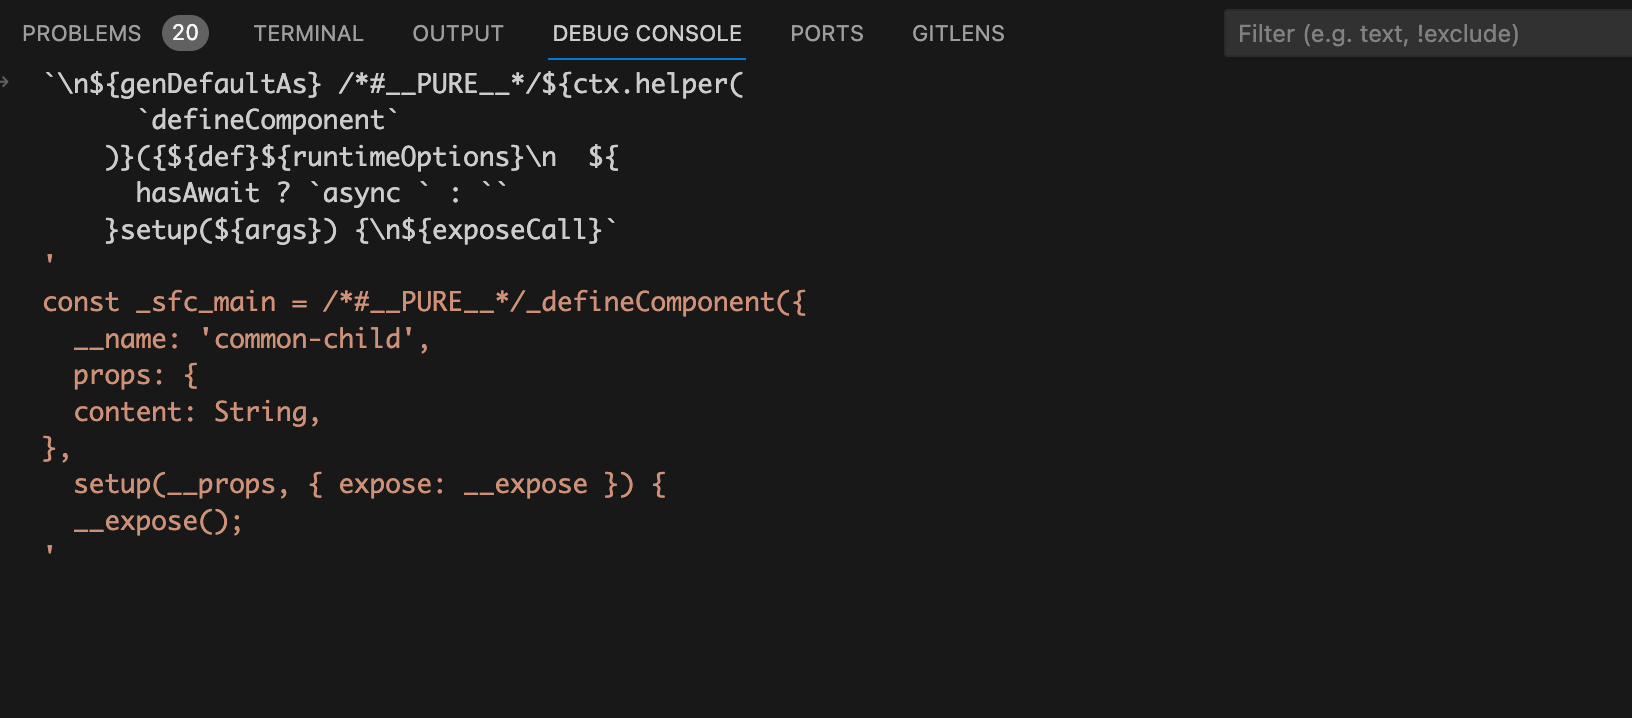 为什么defineProps宏函数不需要从vue中import导入？